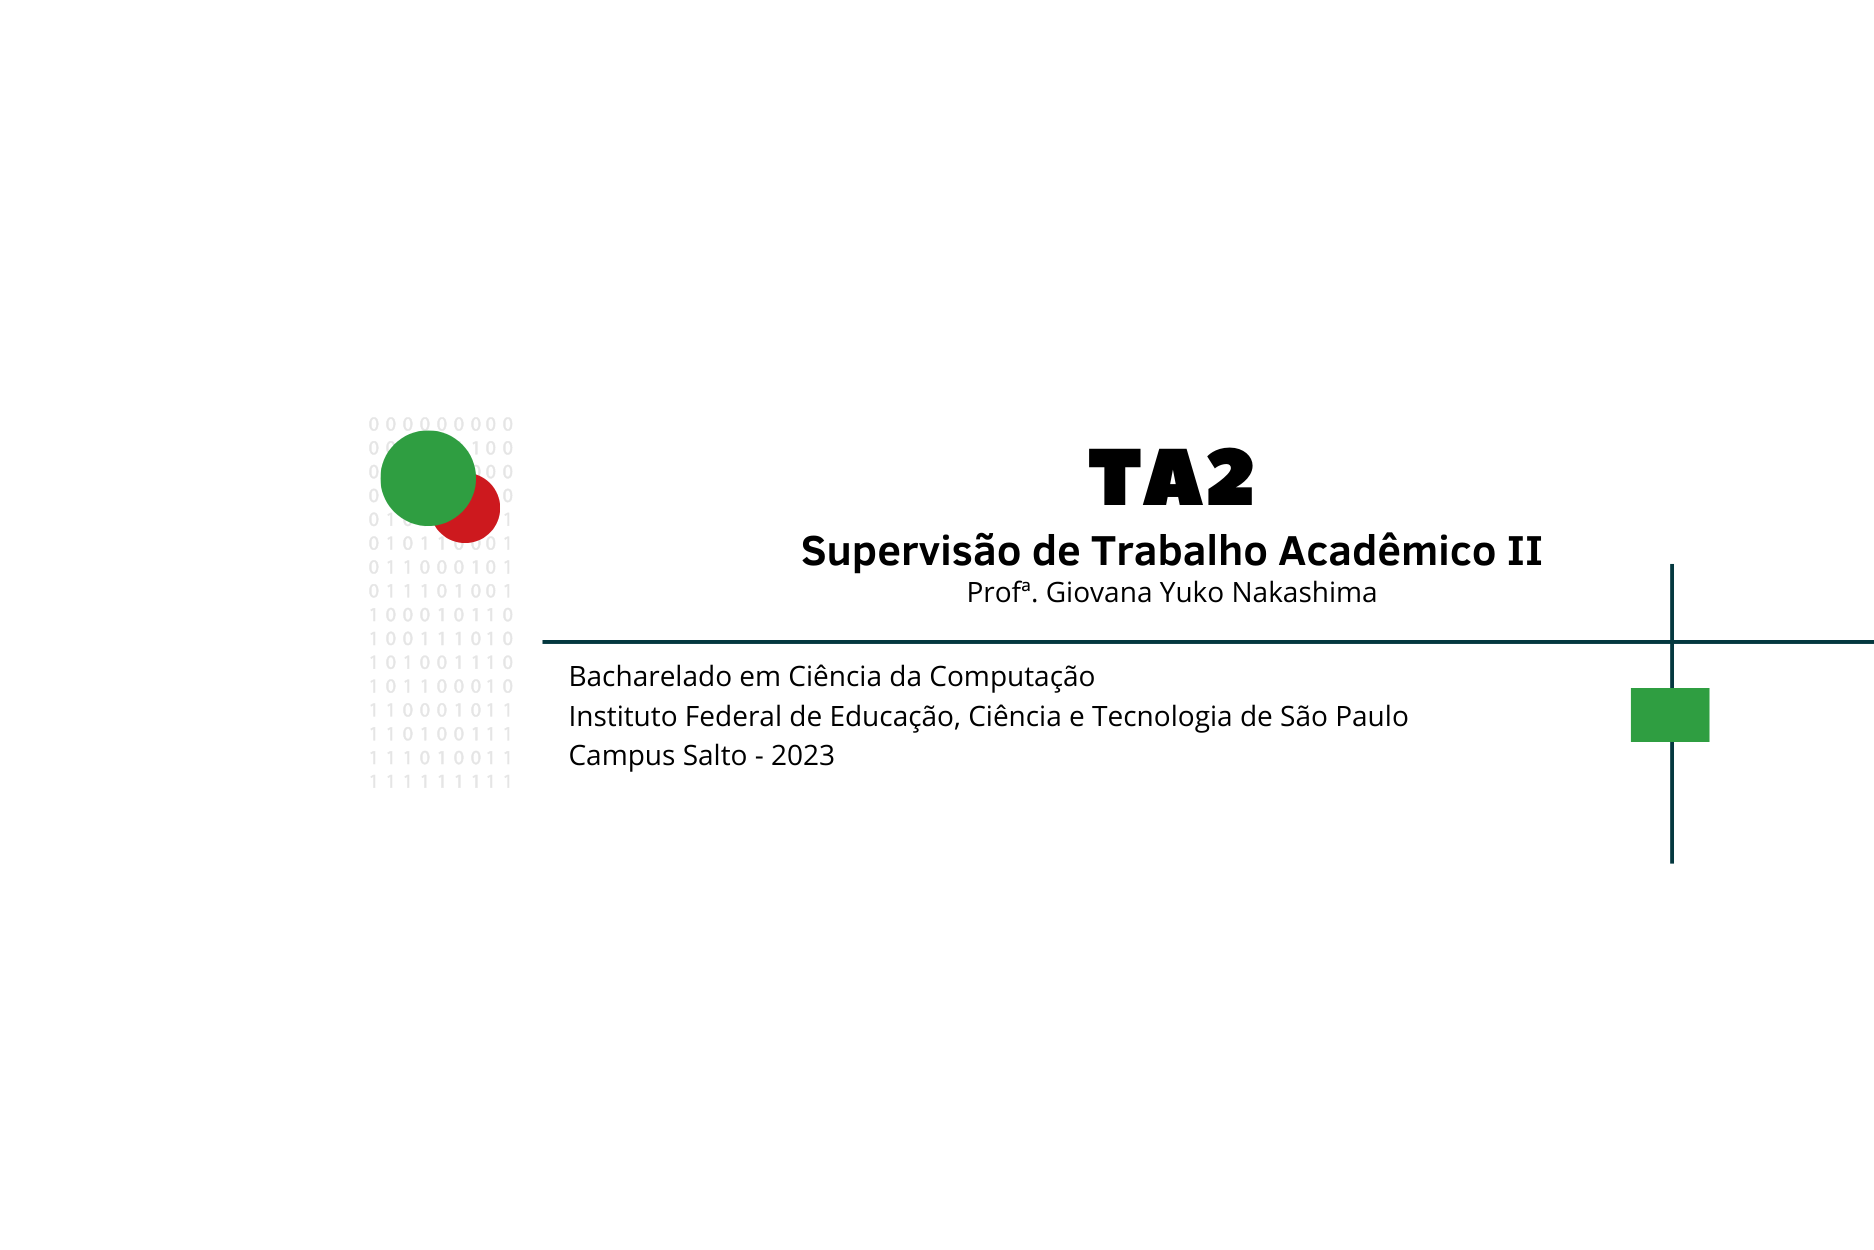 TA2 - Supervisão de Trabalho Acadêmico II - BCC - 2023 - Profª Giovana